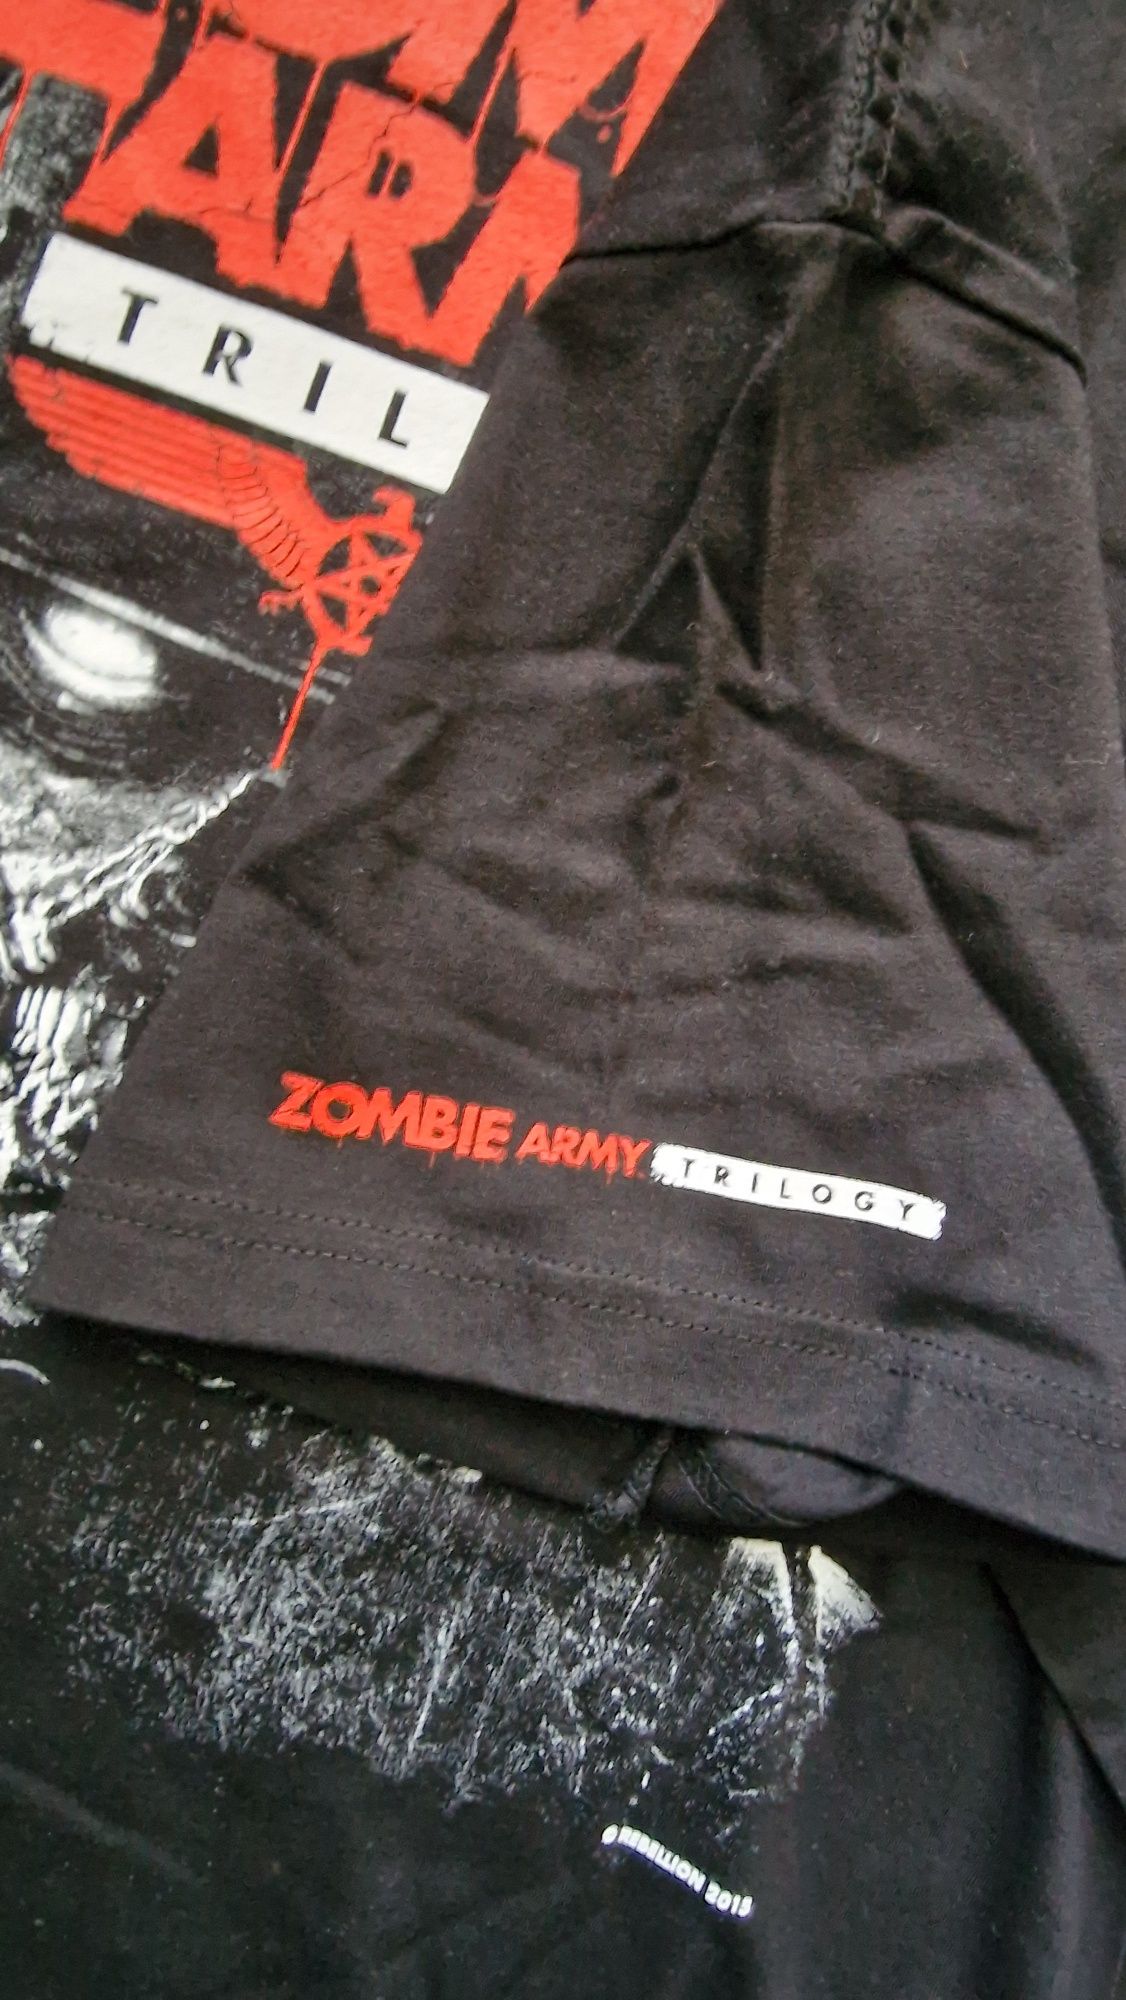 Zombie Army Trilogy koszulka T-shirt L motyw z gry